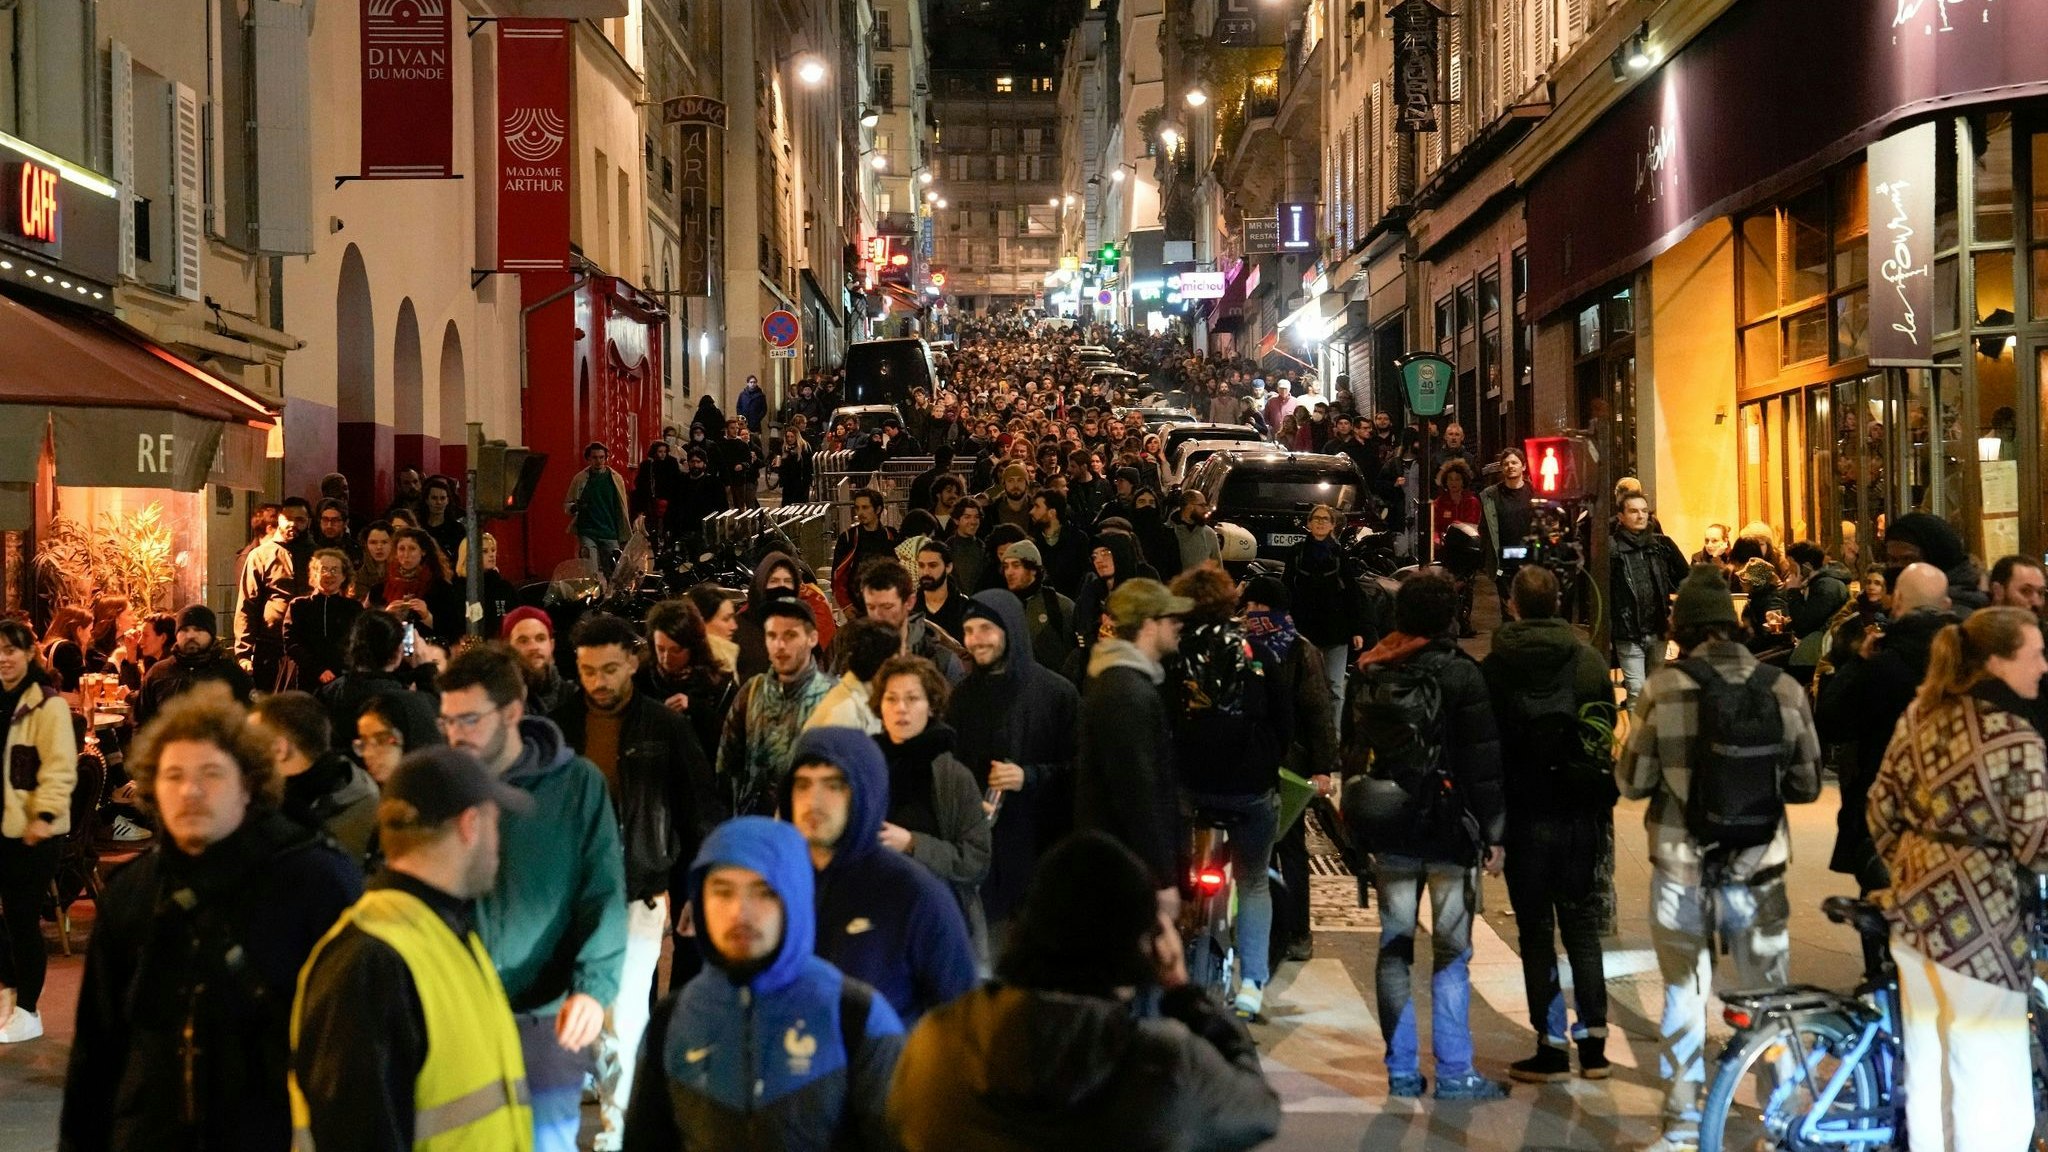 Demonstranten marschieren während einer Demonstration in Paris. Foto: dpa/Joly